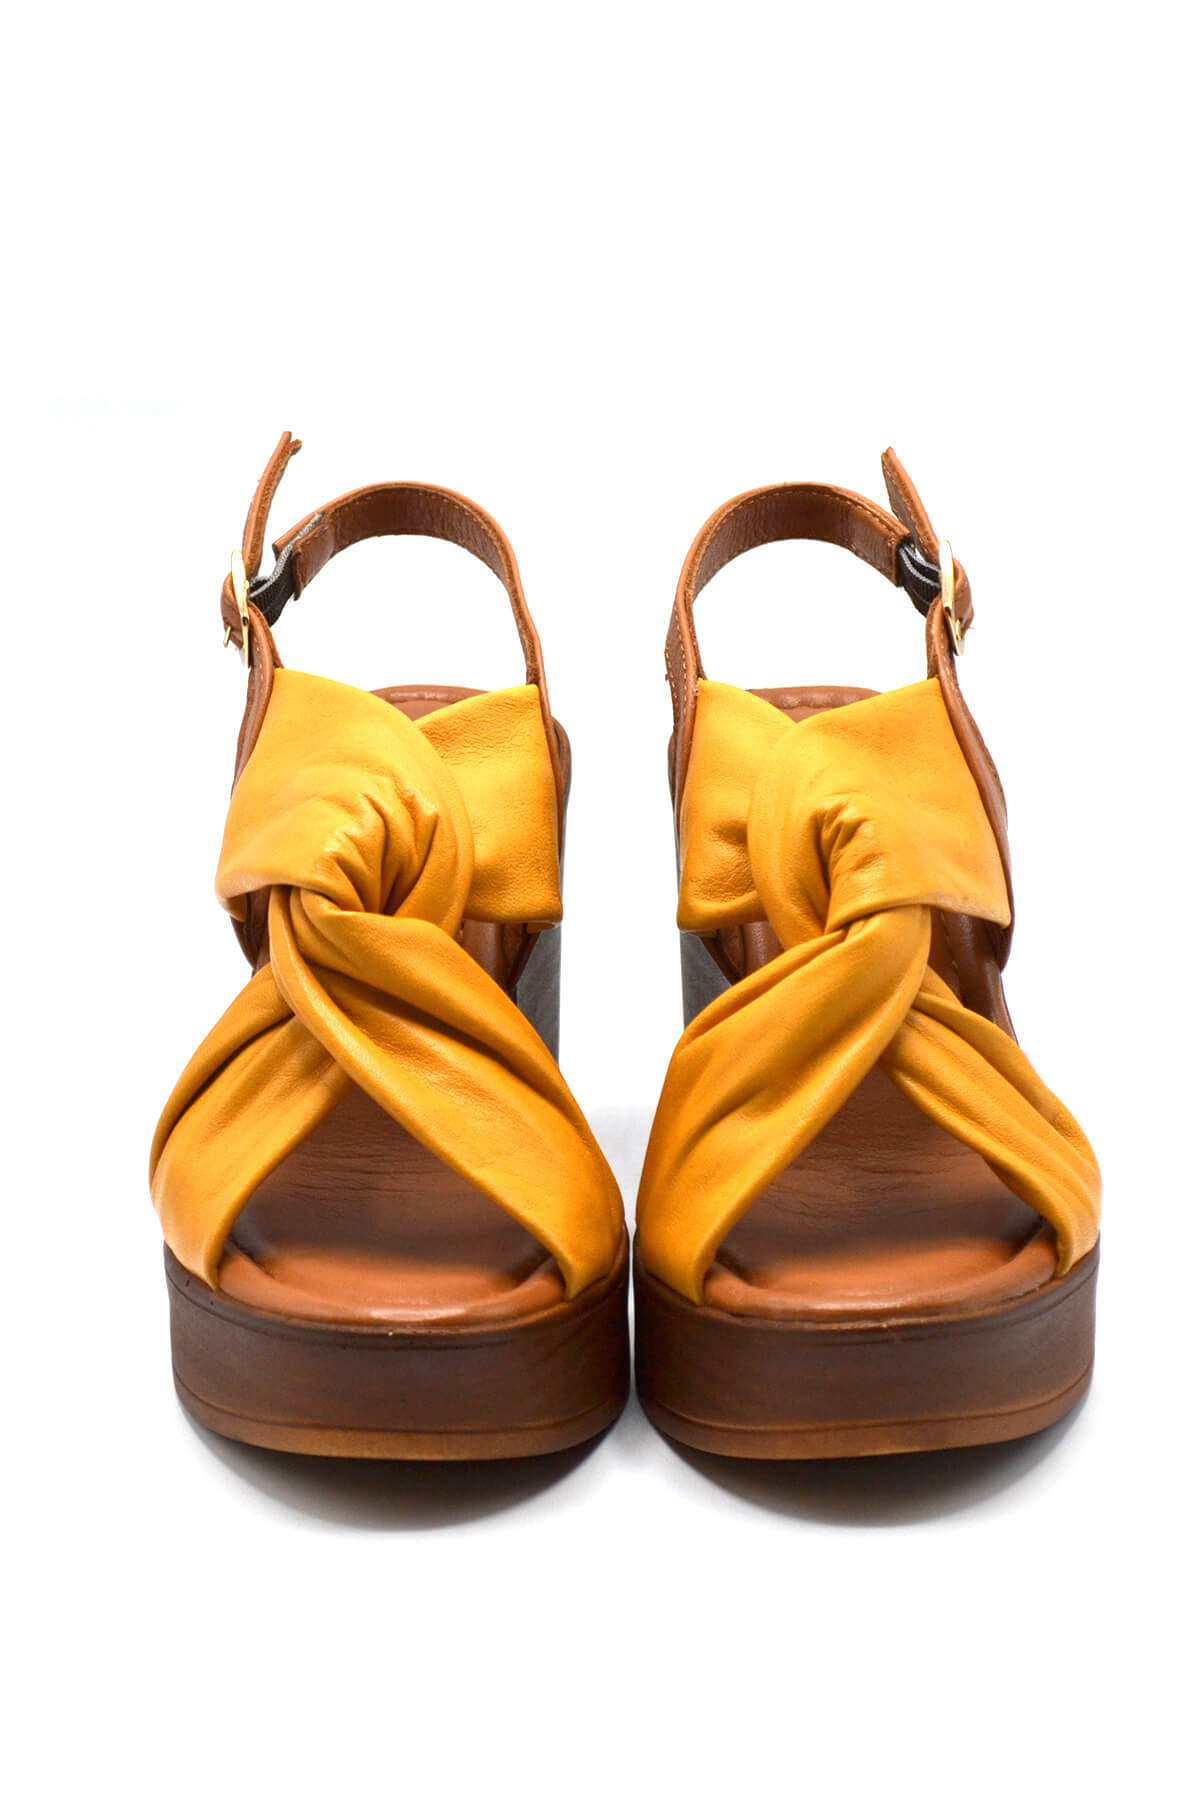 Kadın Dolgu Topuk Deri Sandalet Sarı 2310803Y - Thumbnail